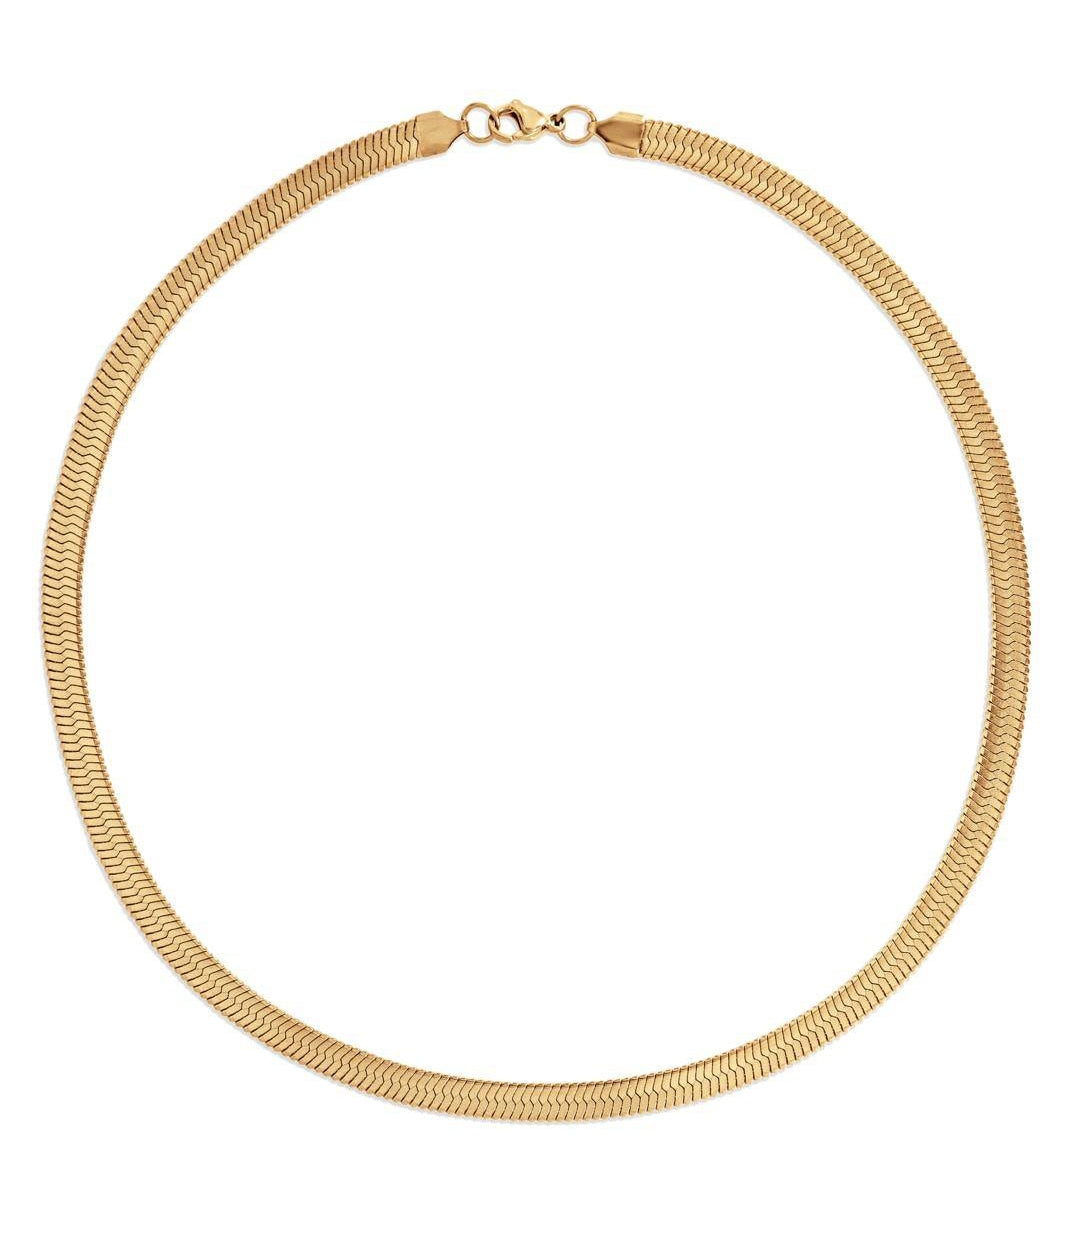 Gold Herringbone Chain from Glazd Jewels